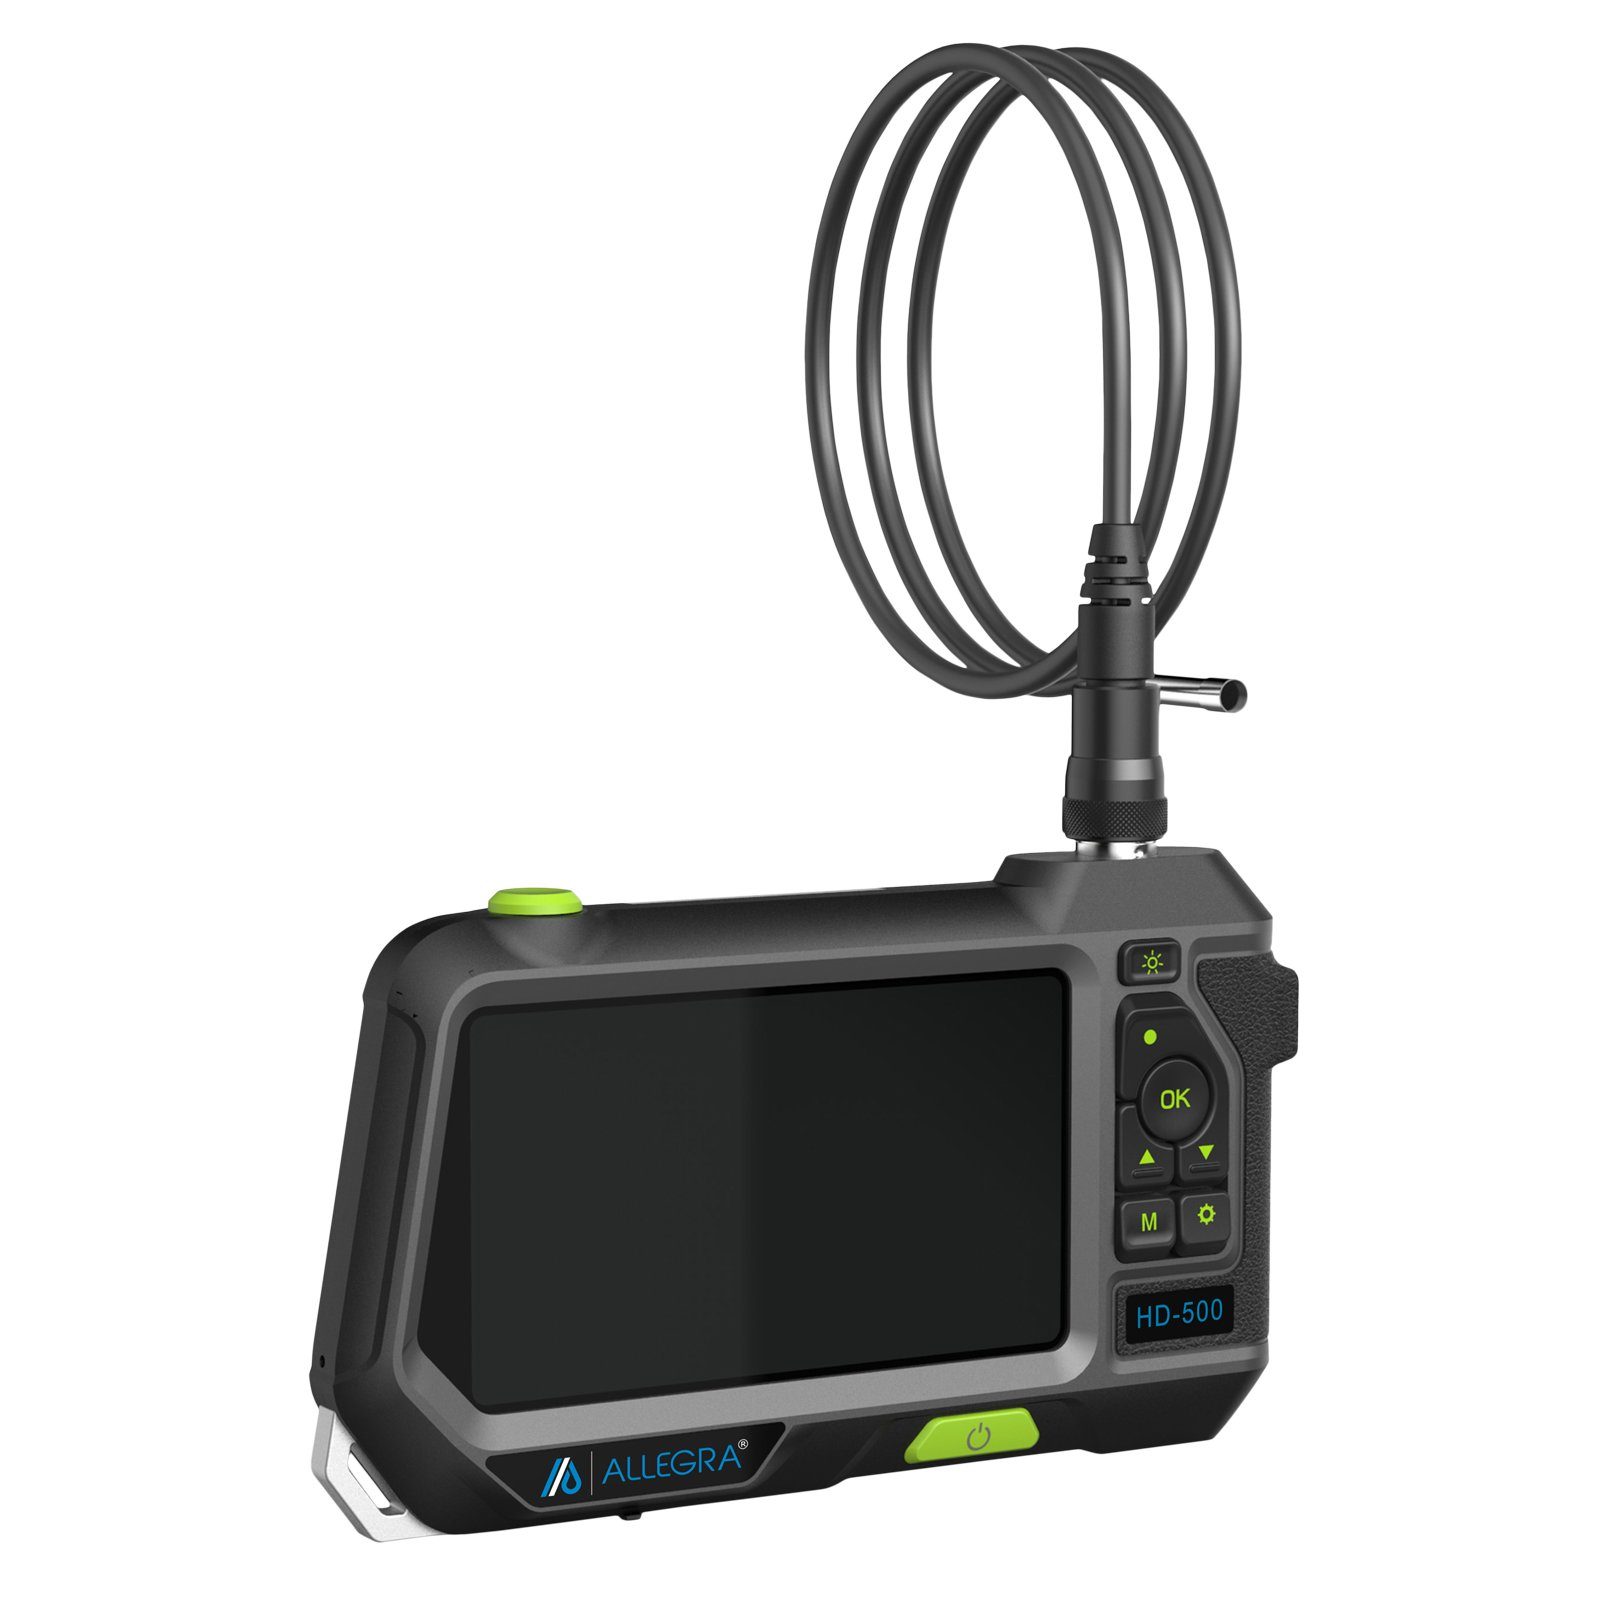 HD-500 - 3m Inspektionskamera Dualkopf Endoskop mit ALLEGRA ALLEGRA Kamerasonde